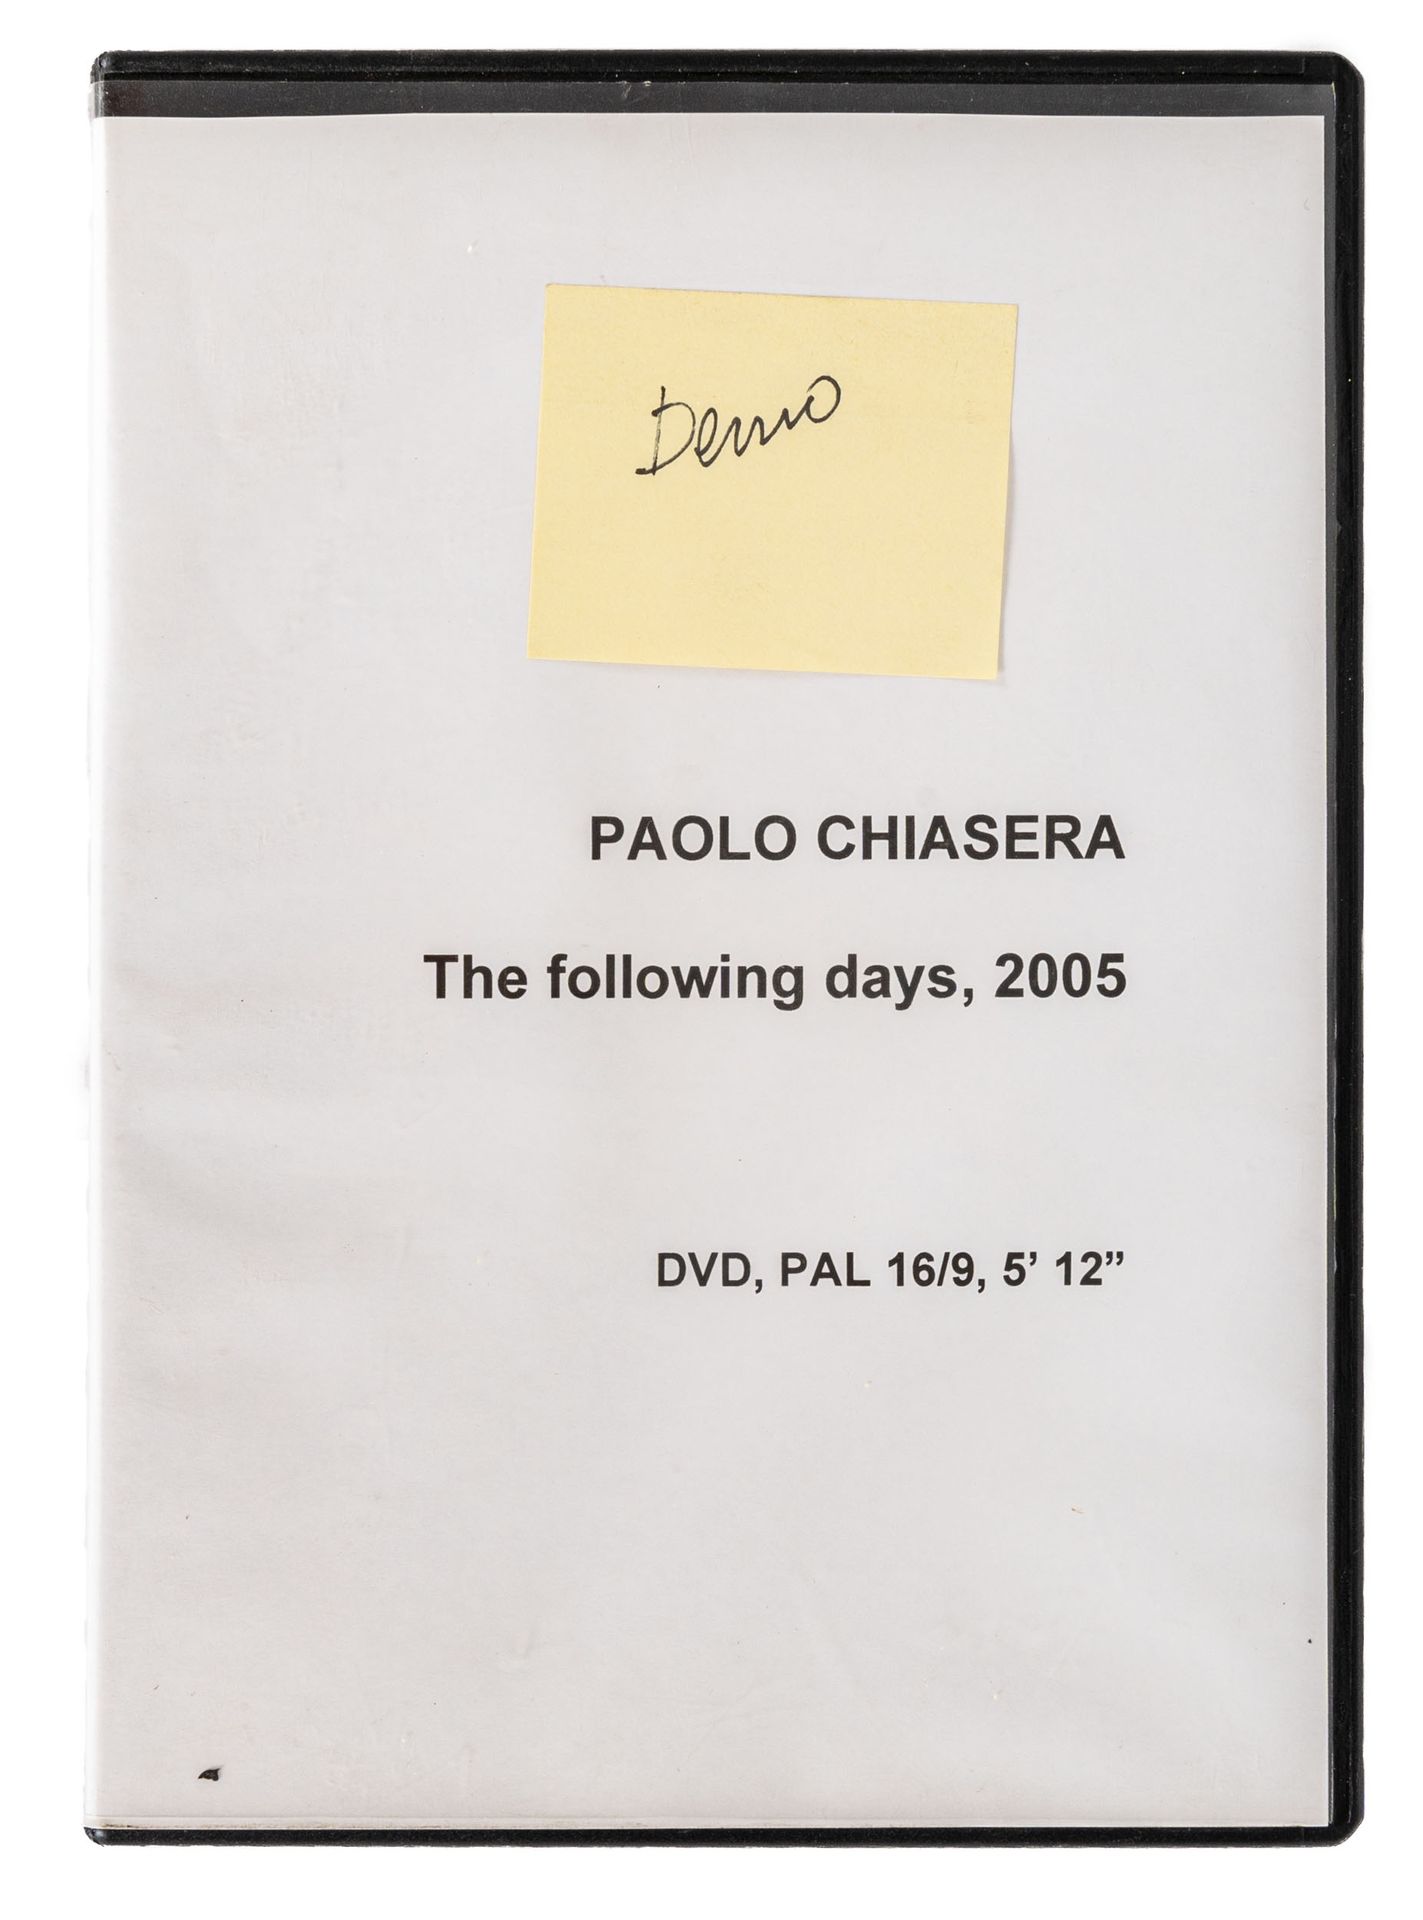 PAOLO CHIASERA PAUL CHIASERA

(1978)

Sans titre

DVD vidéo et VHS de la documen&hellip;